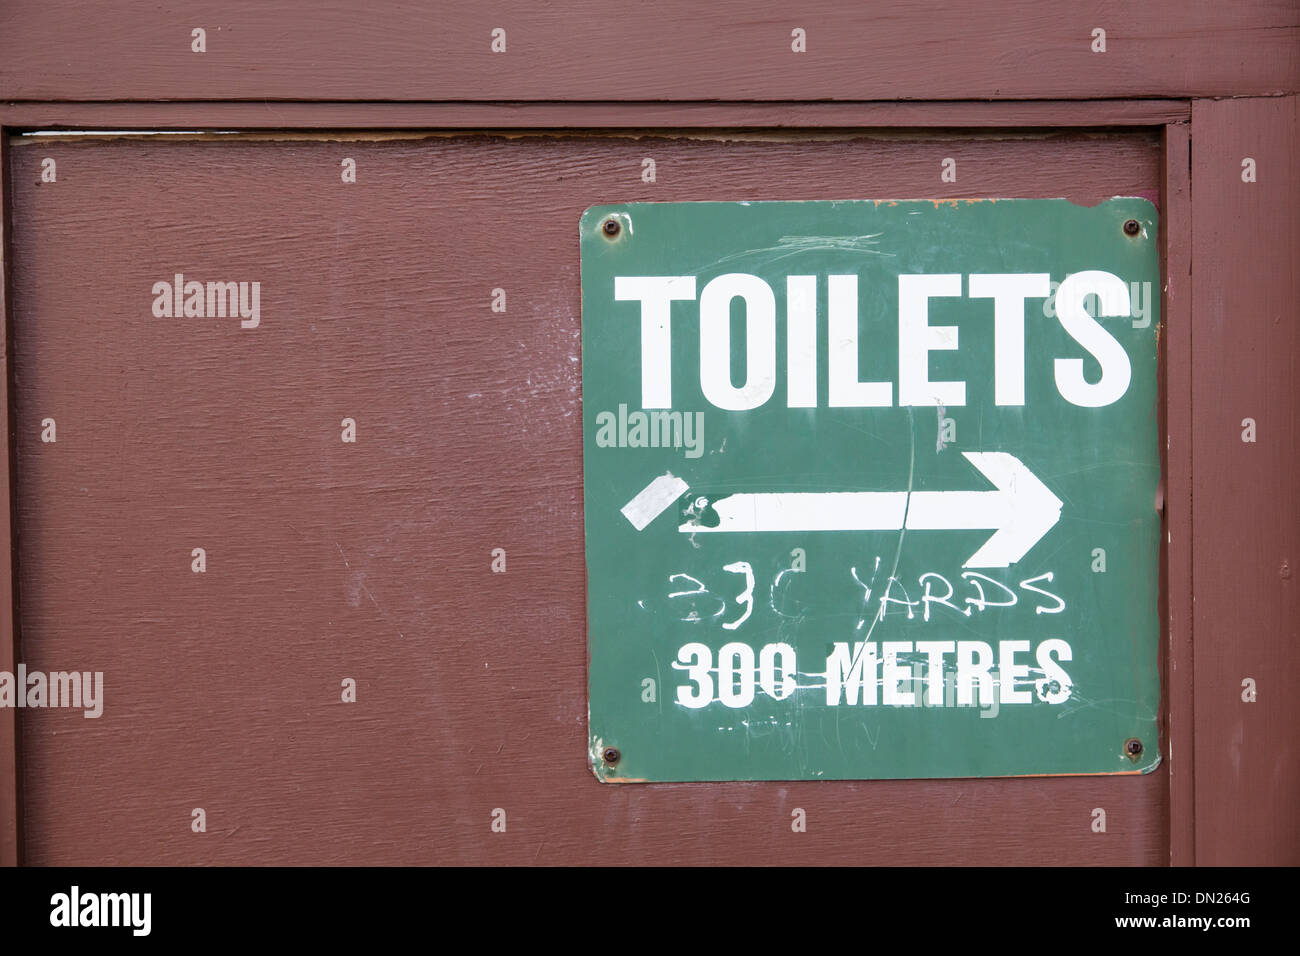 Signer pour les toilettes publiques sur le mur donnant la distance en mètres biffé et remplacé avec yards. Banque D'Images